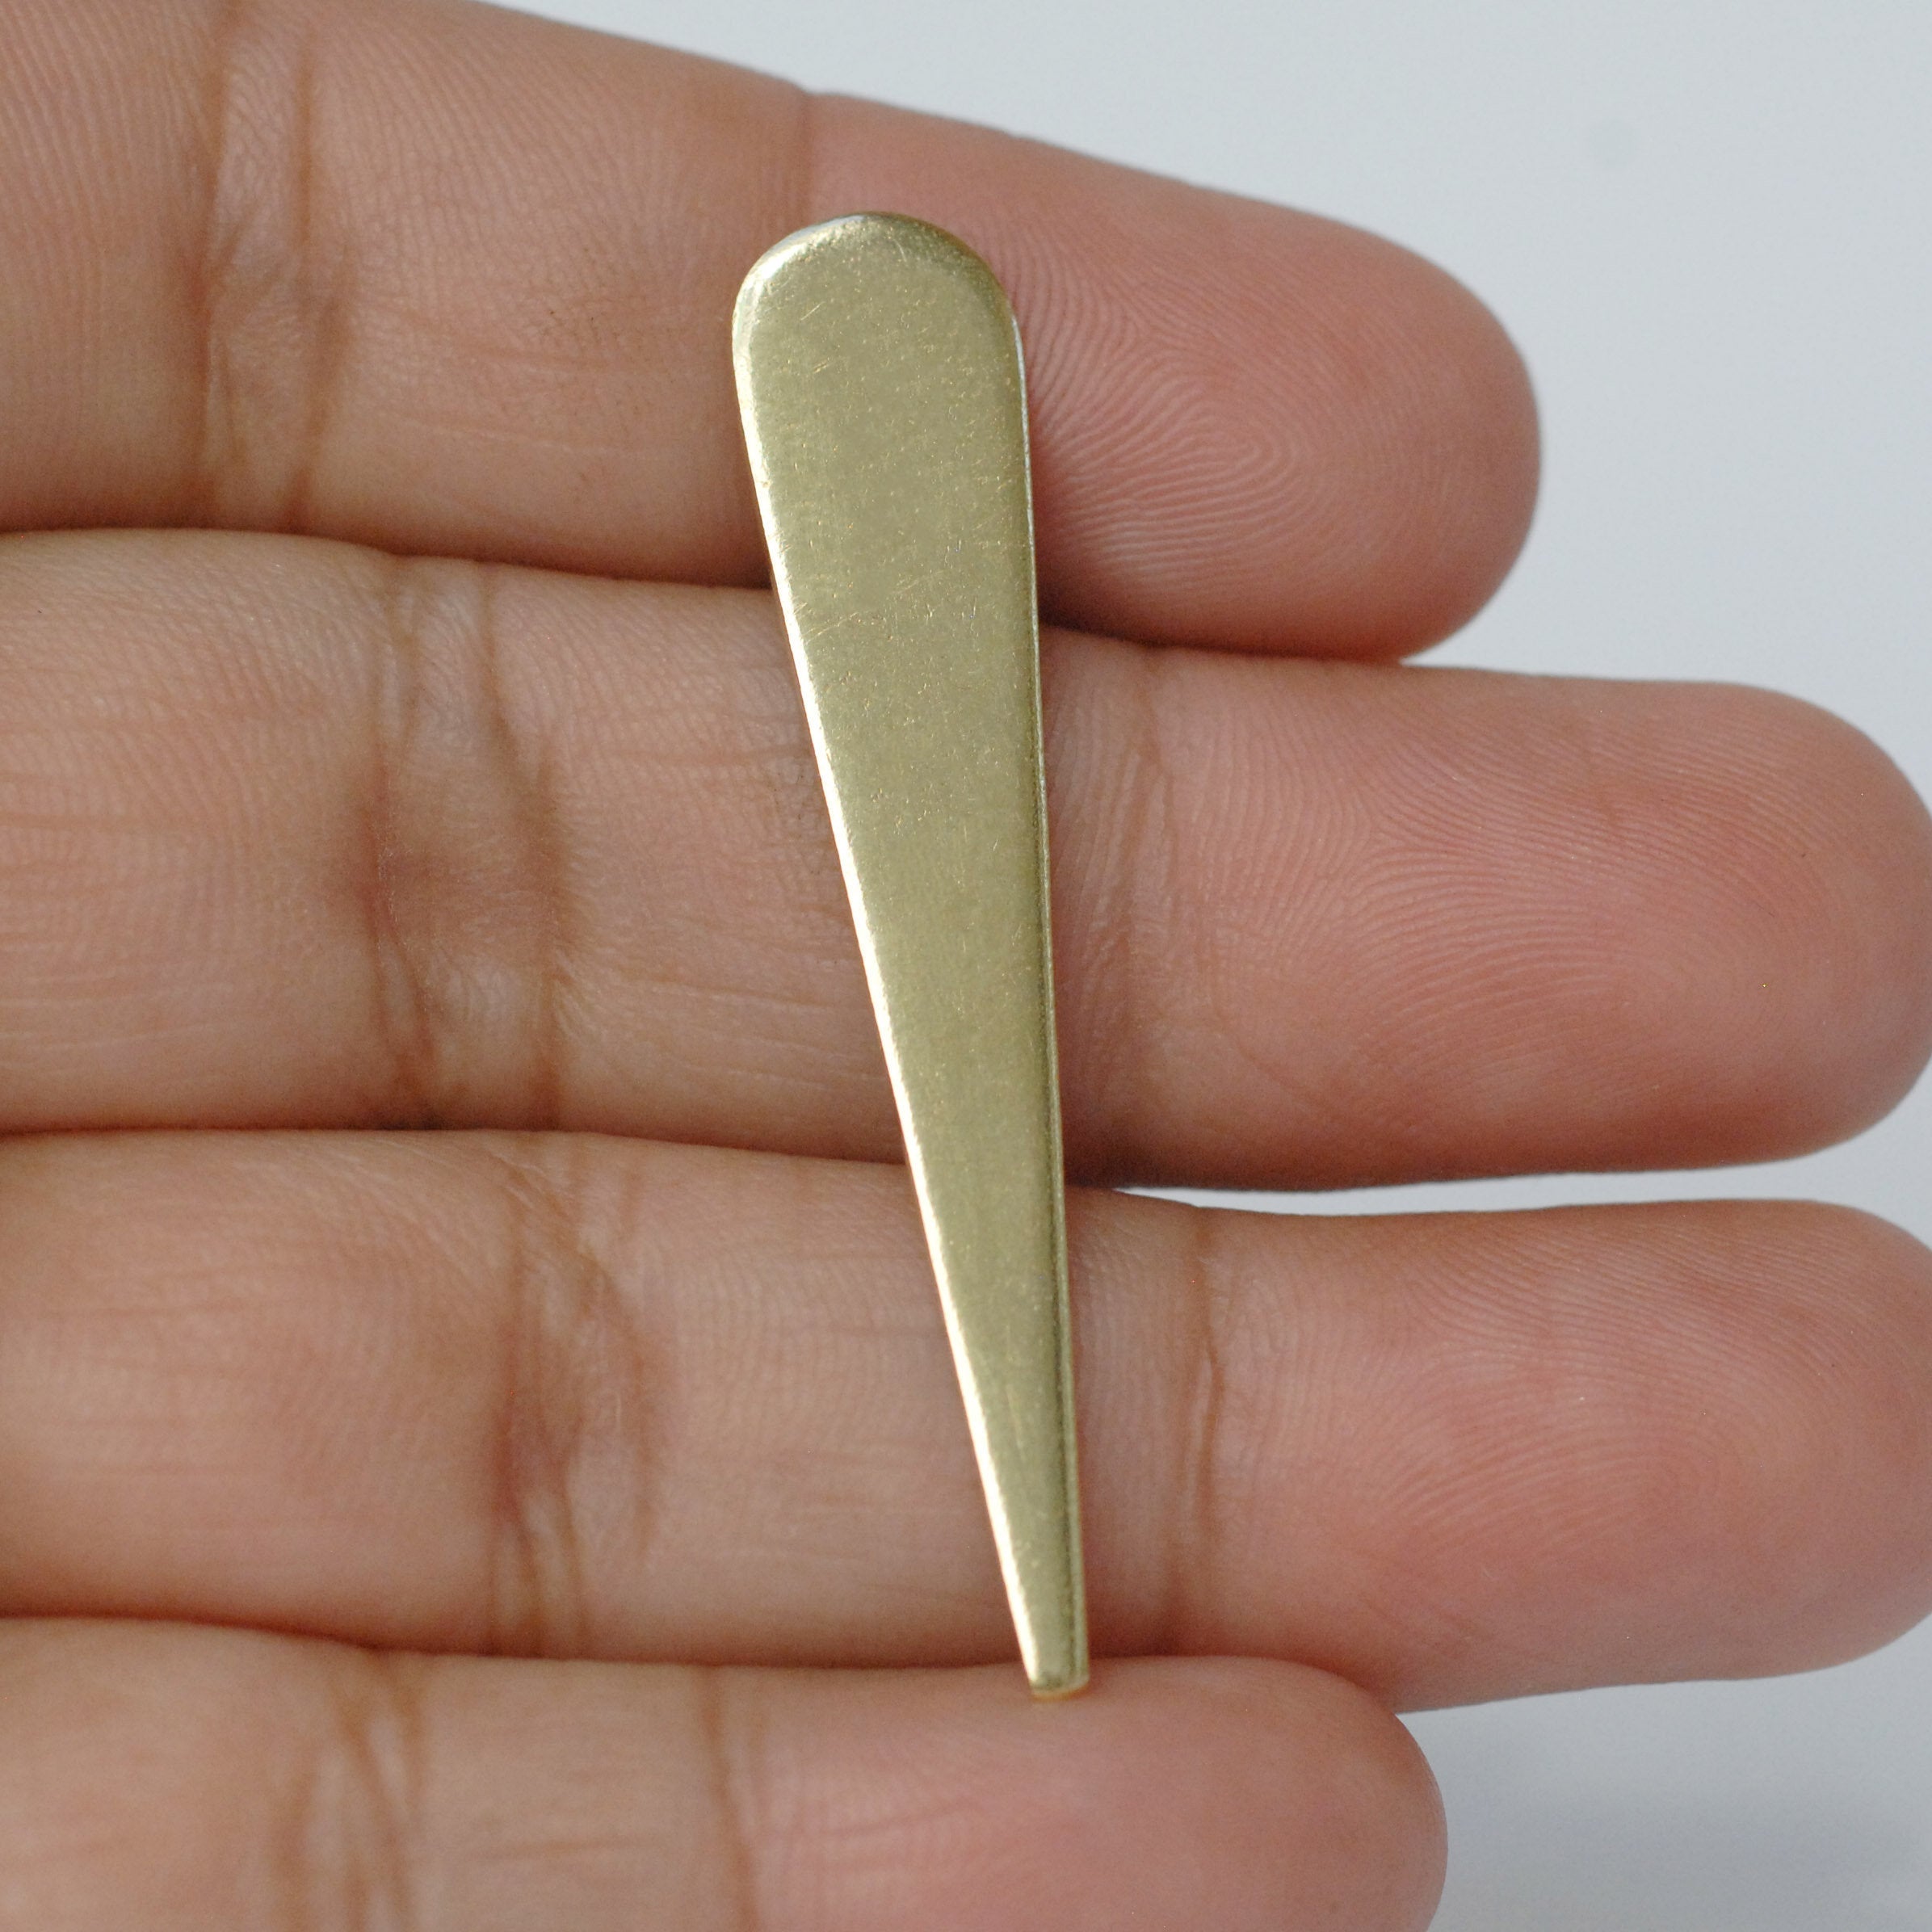 Long Teardrop Blank Tongue Shape Cutout for making jewelry, copper, brass, bronze, nickel silver